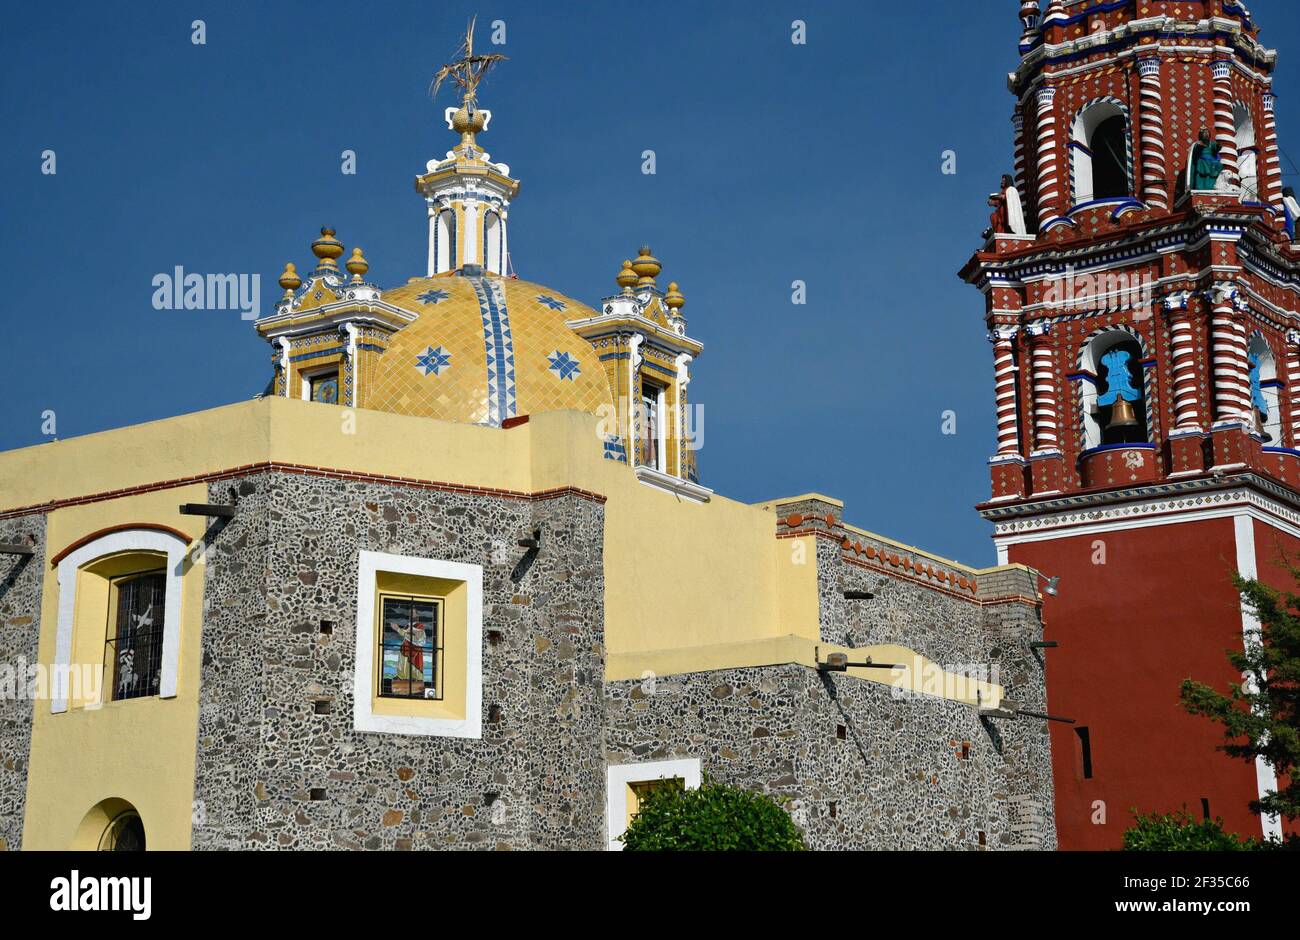 Cupola and bell tower view of the Baroque church Santa María Tonantzintla in Cholula, Puebla Mexico. Stock Photo